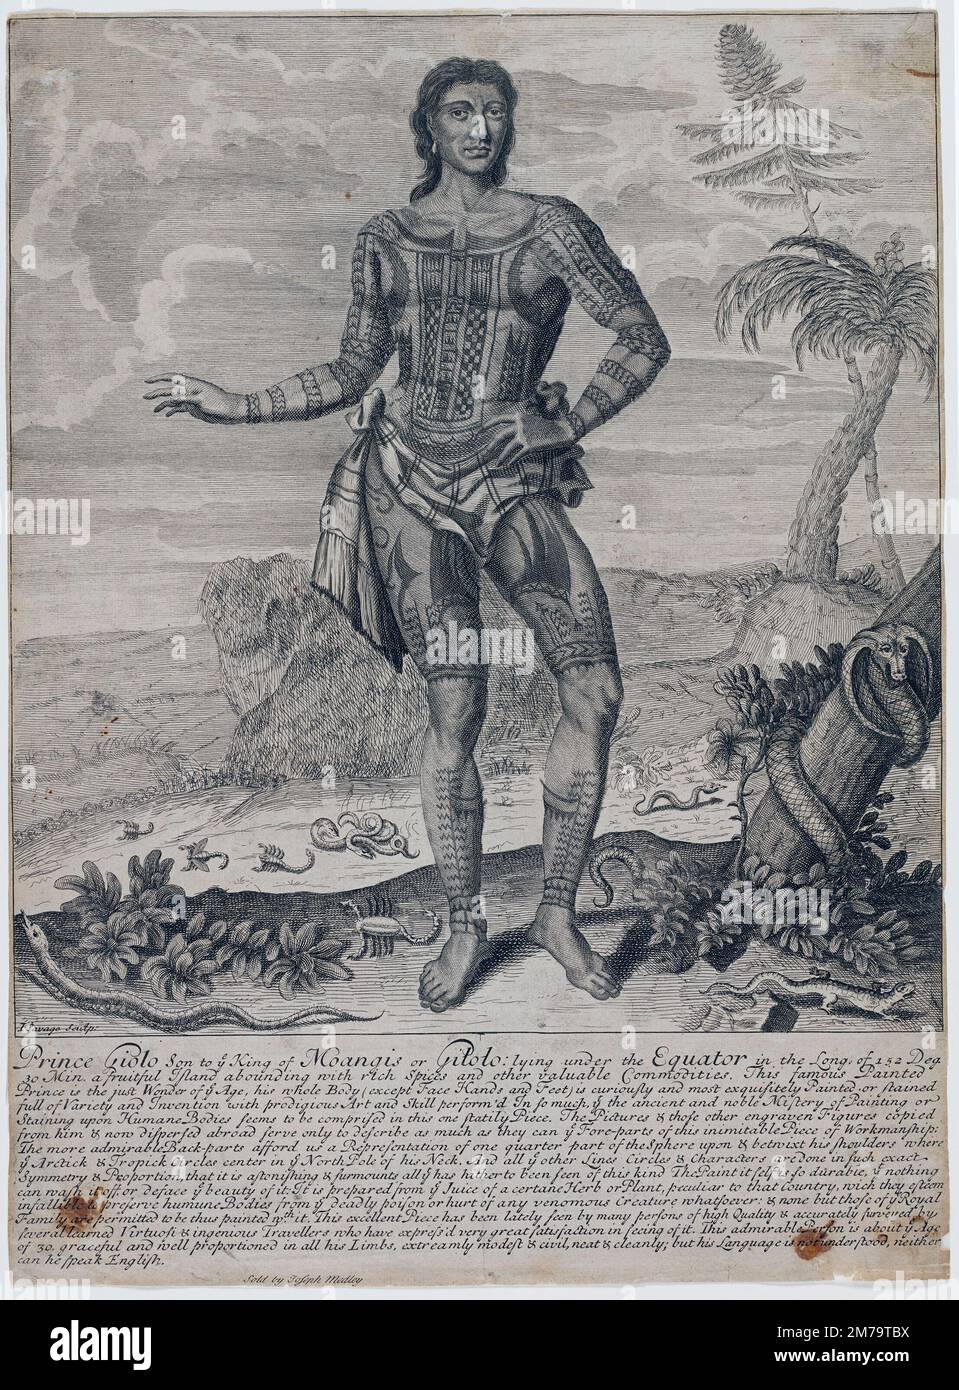 Prinz Giolo, als Sklave von William Dampier auf den Philippinen gekauft, Ätzen von John Savage um 1692. Giolo (echter Name Jeoly) von Miangas, ein Sklave in Mindanao Stockfoto